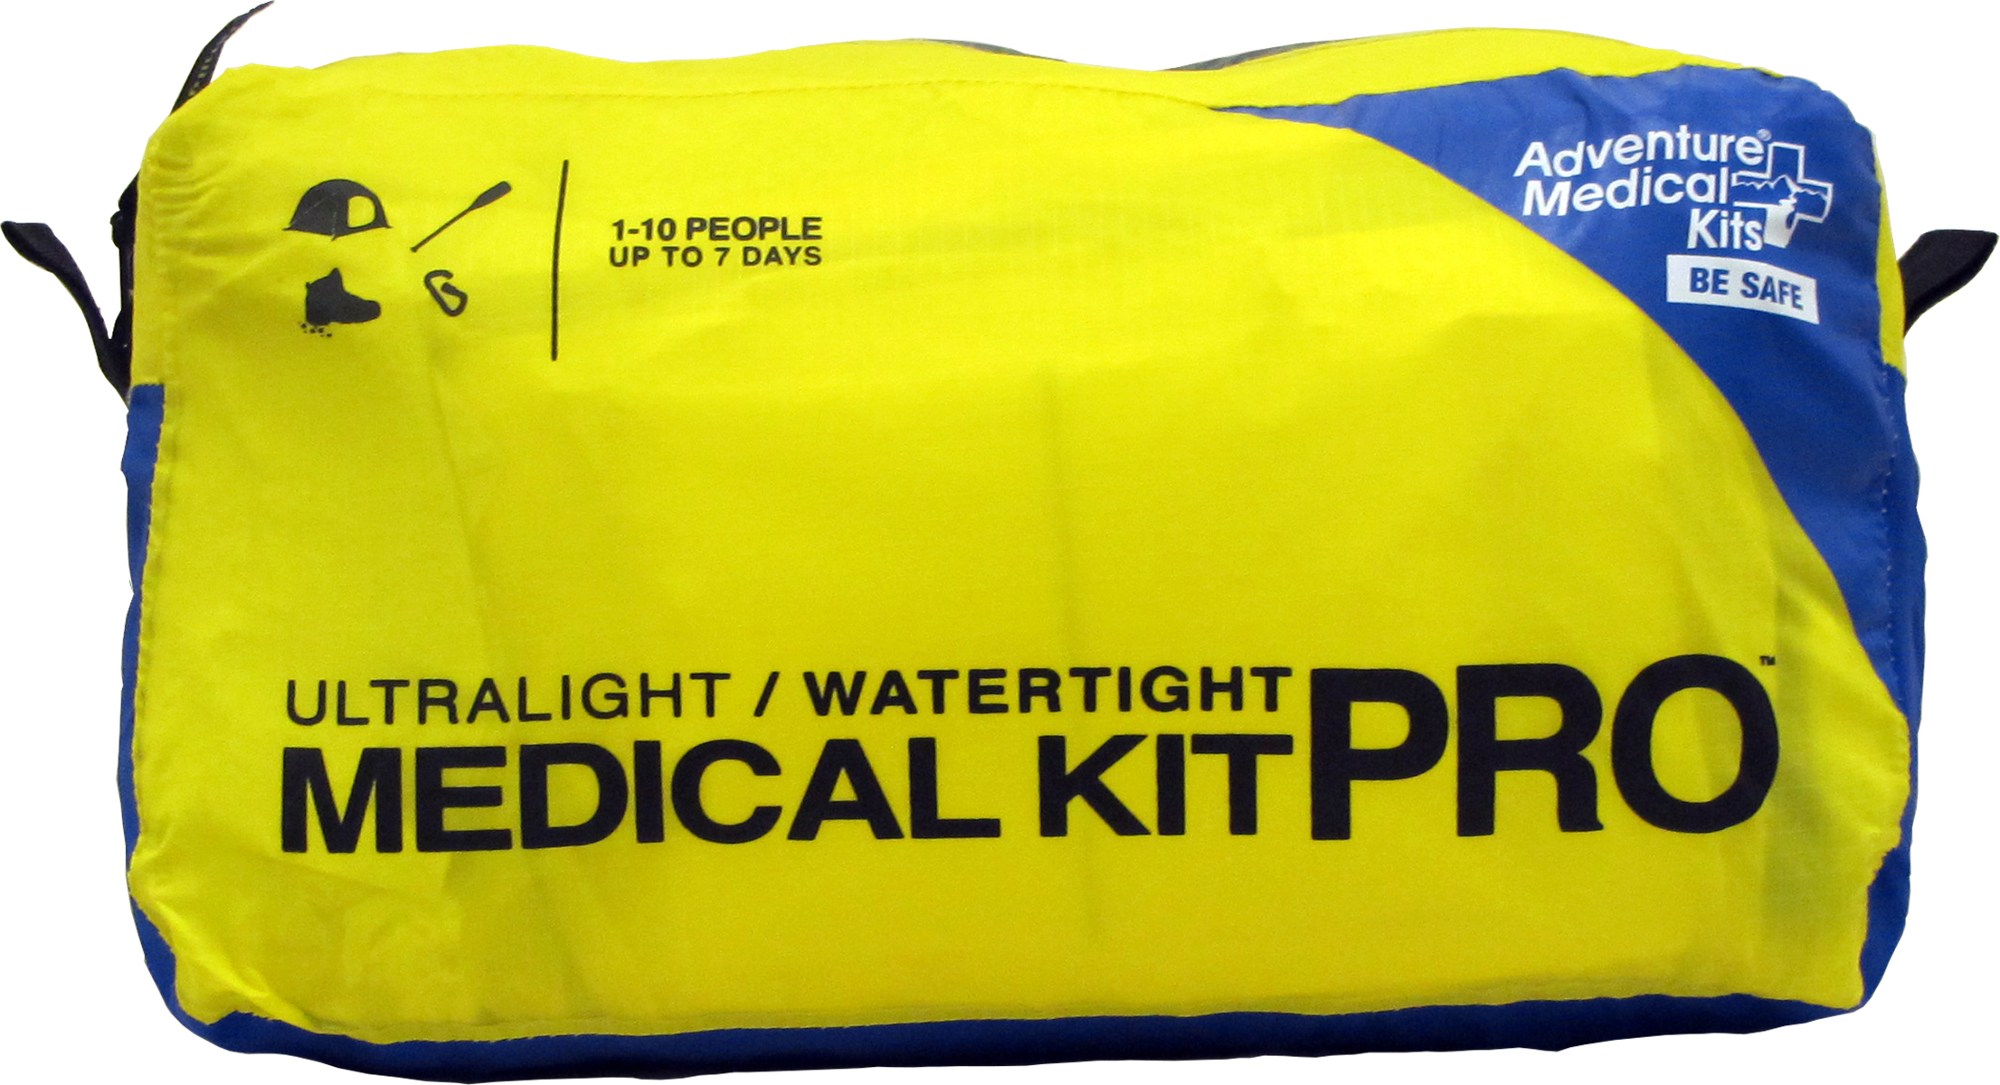 Сверхлегкий/водонепроницаемый медицинский набор PRO Adventure Medical Kits